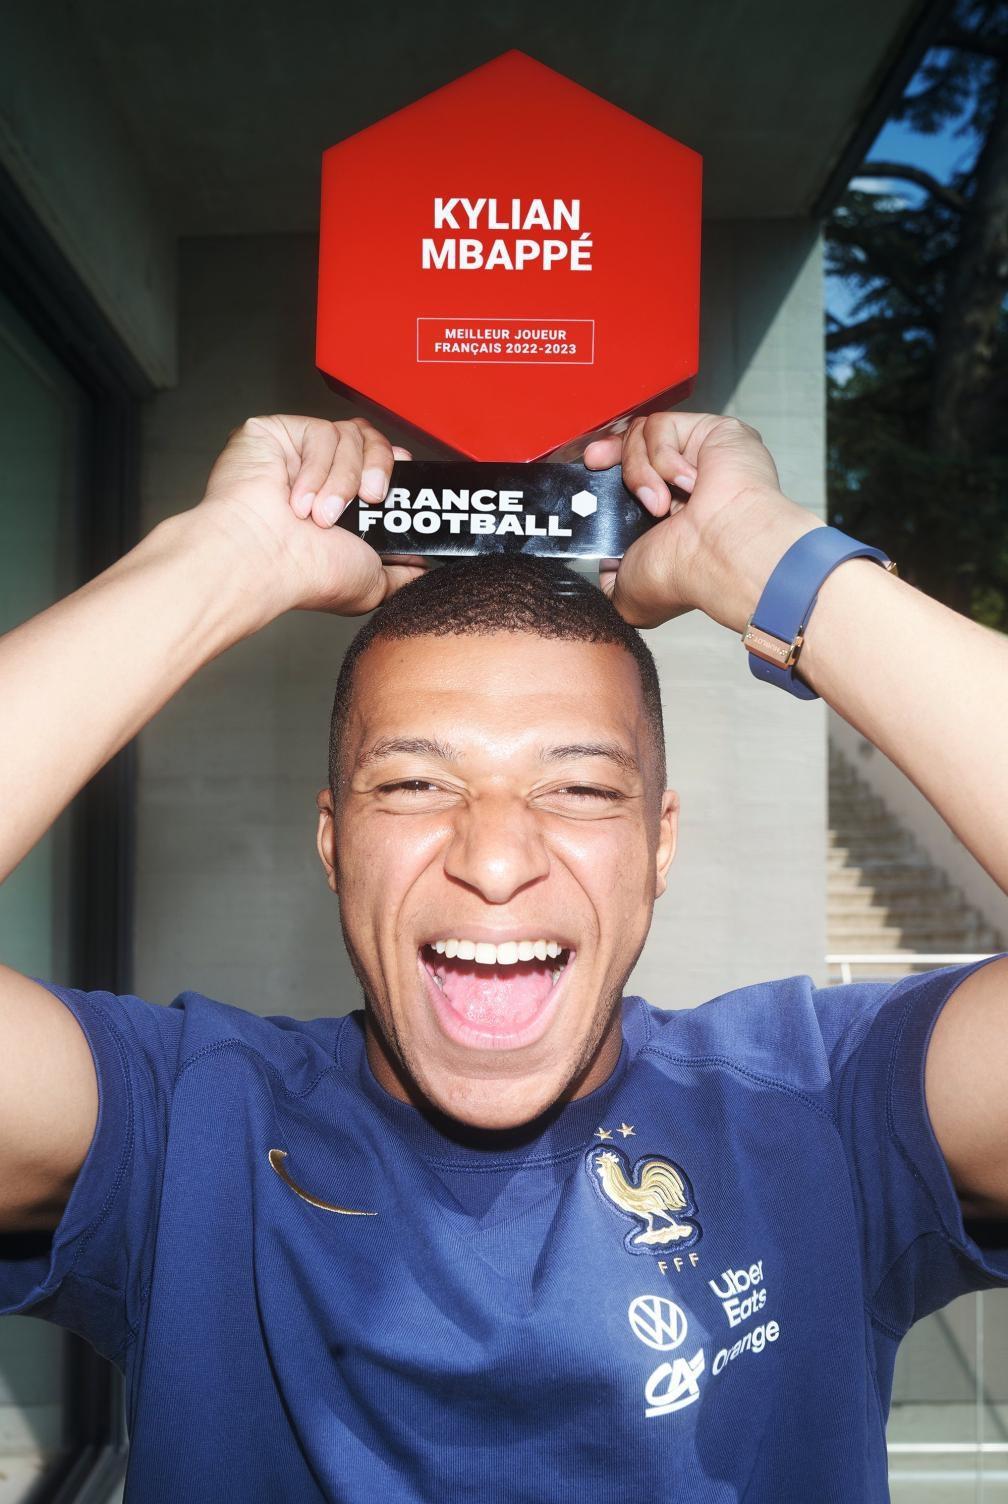 姆巴佩的野心应该就是金球奖了，所以他怒怼了巴黎圣日耳曼

在拿到了《法国足球》评